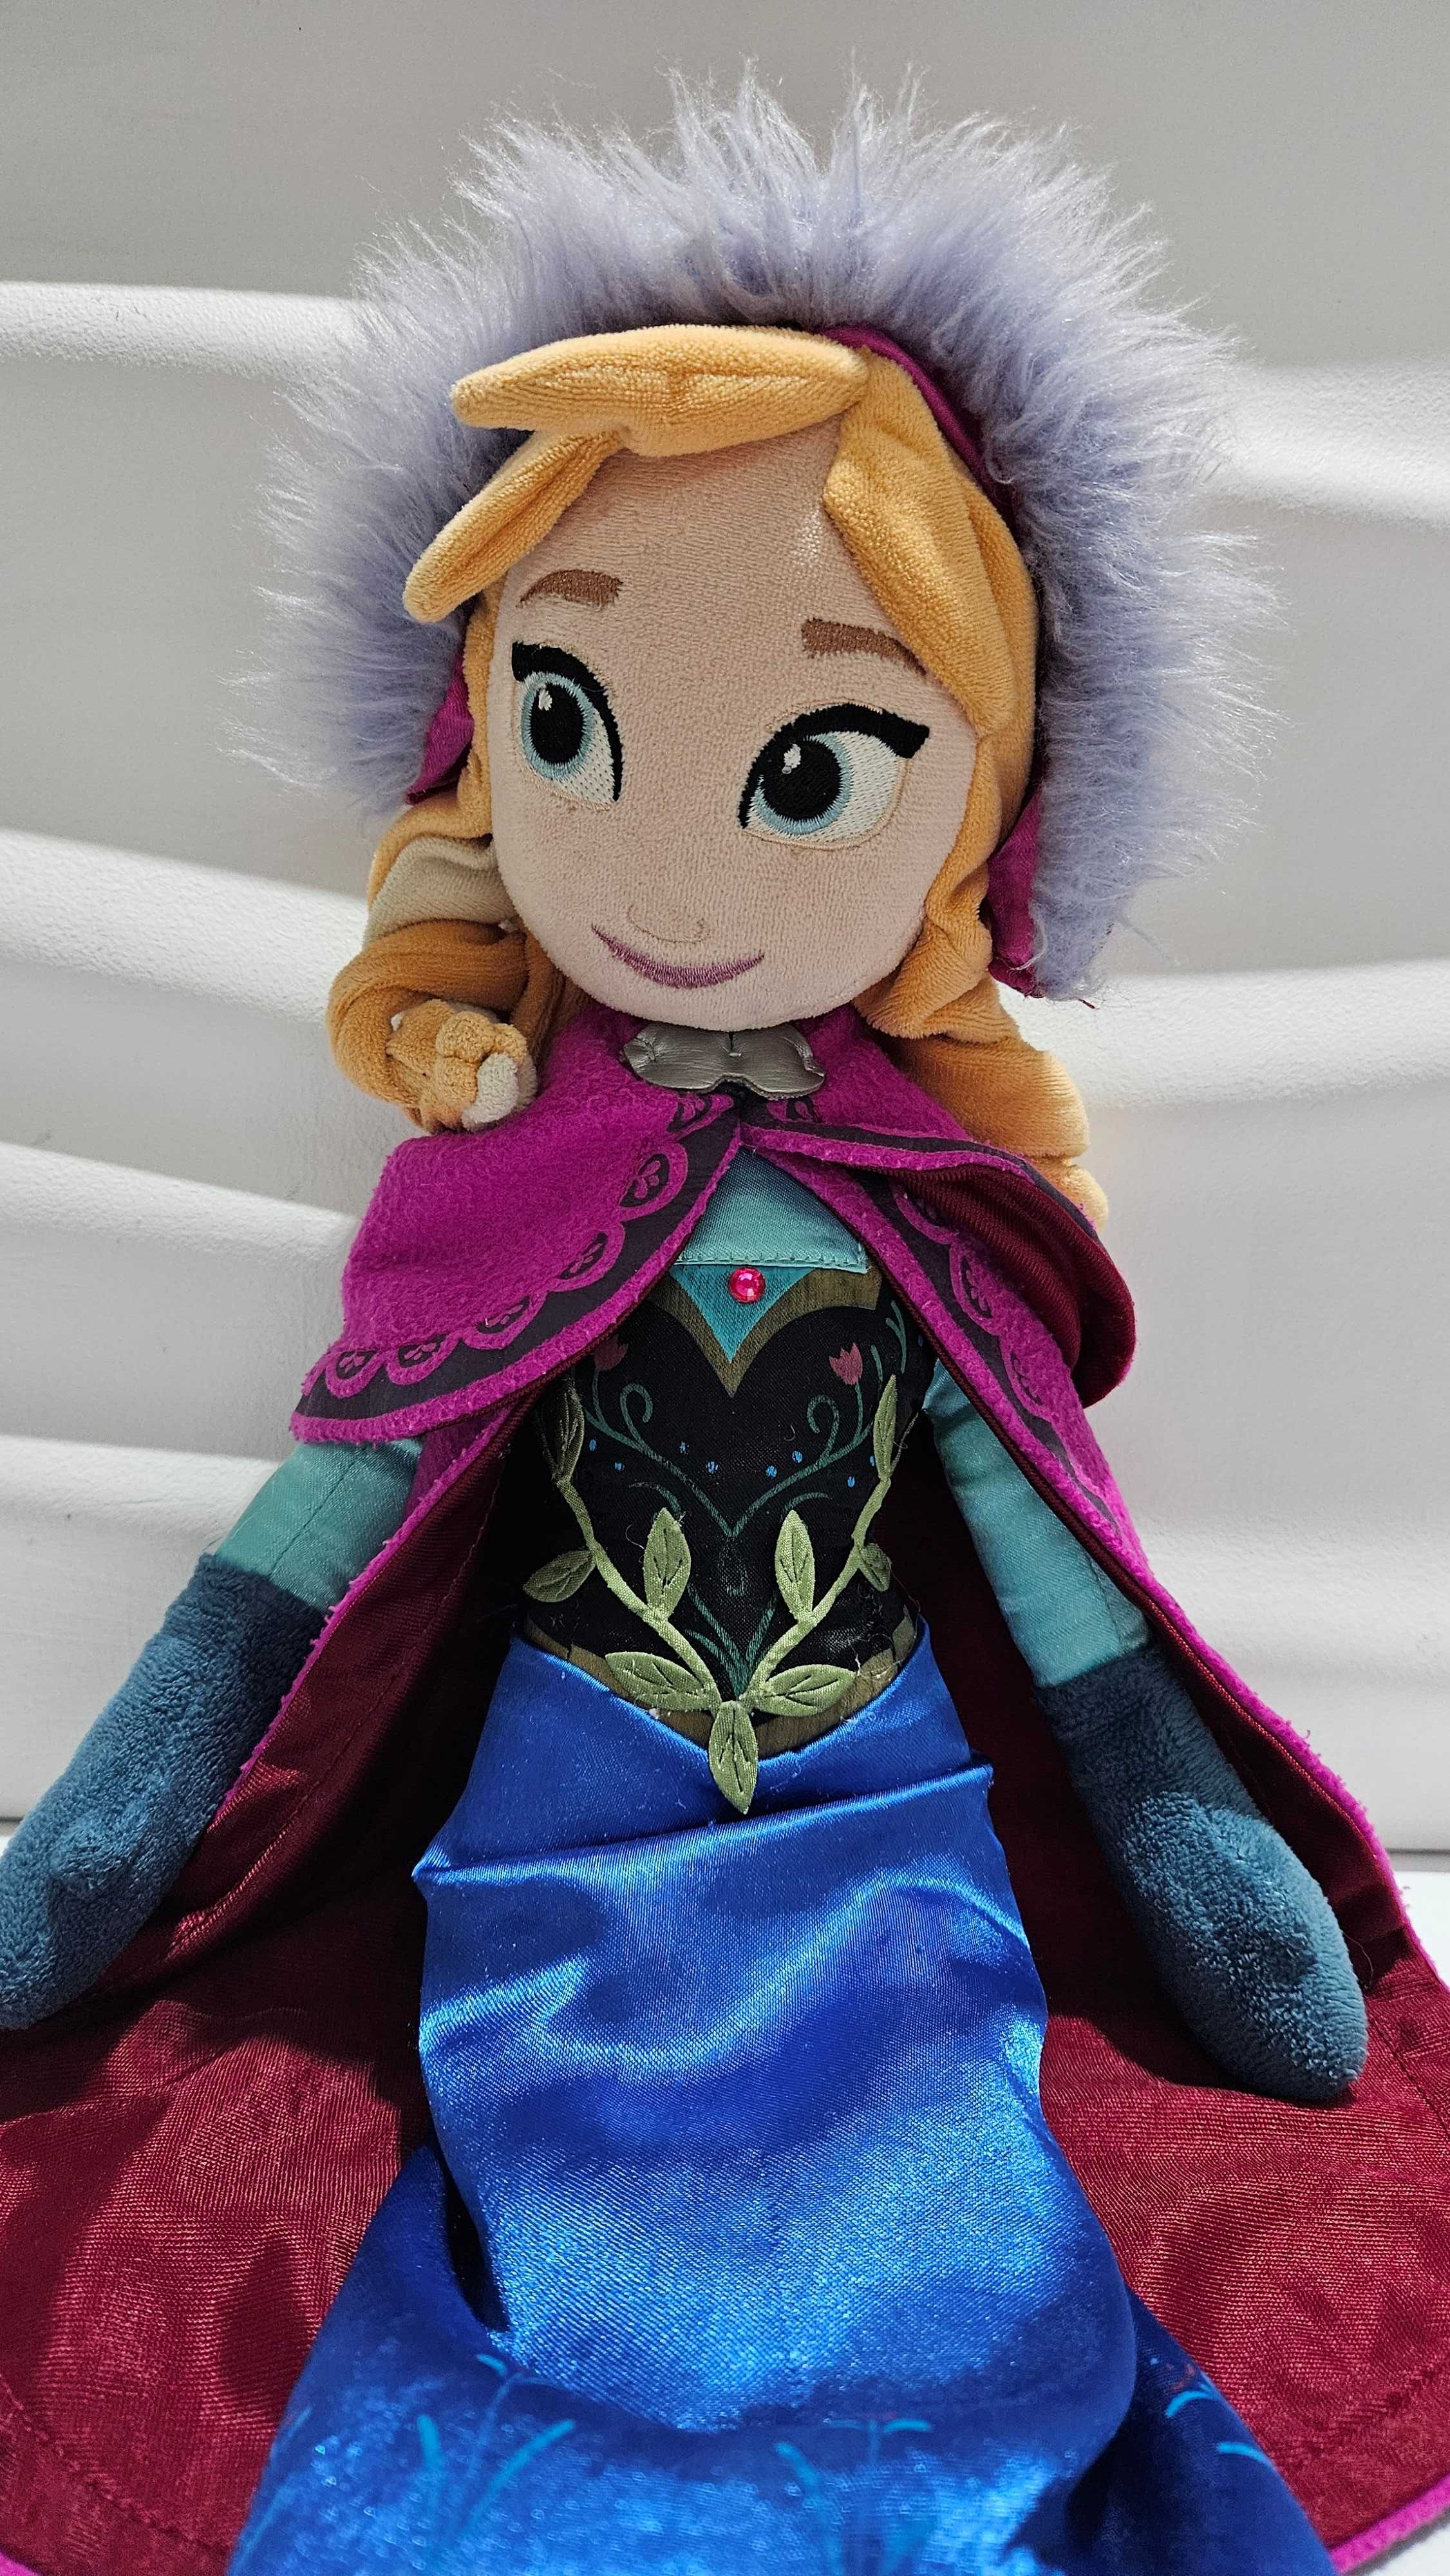 Disney store lalka Kraina Lodu Frozen Anna 55cm pluszowa księżniczka